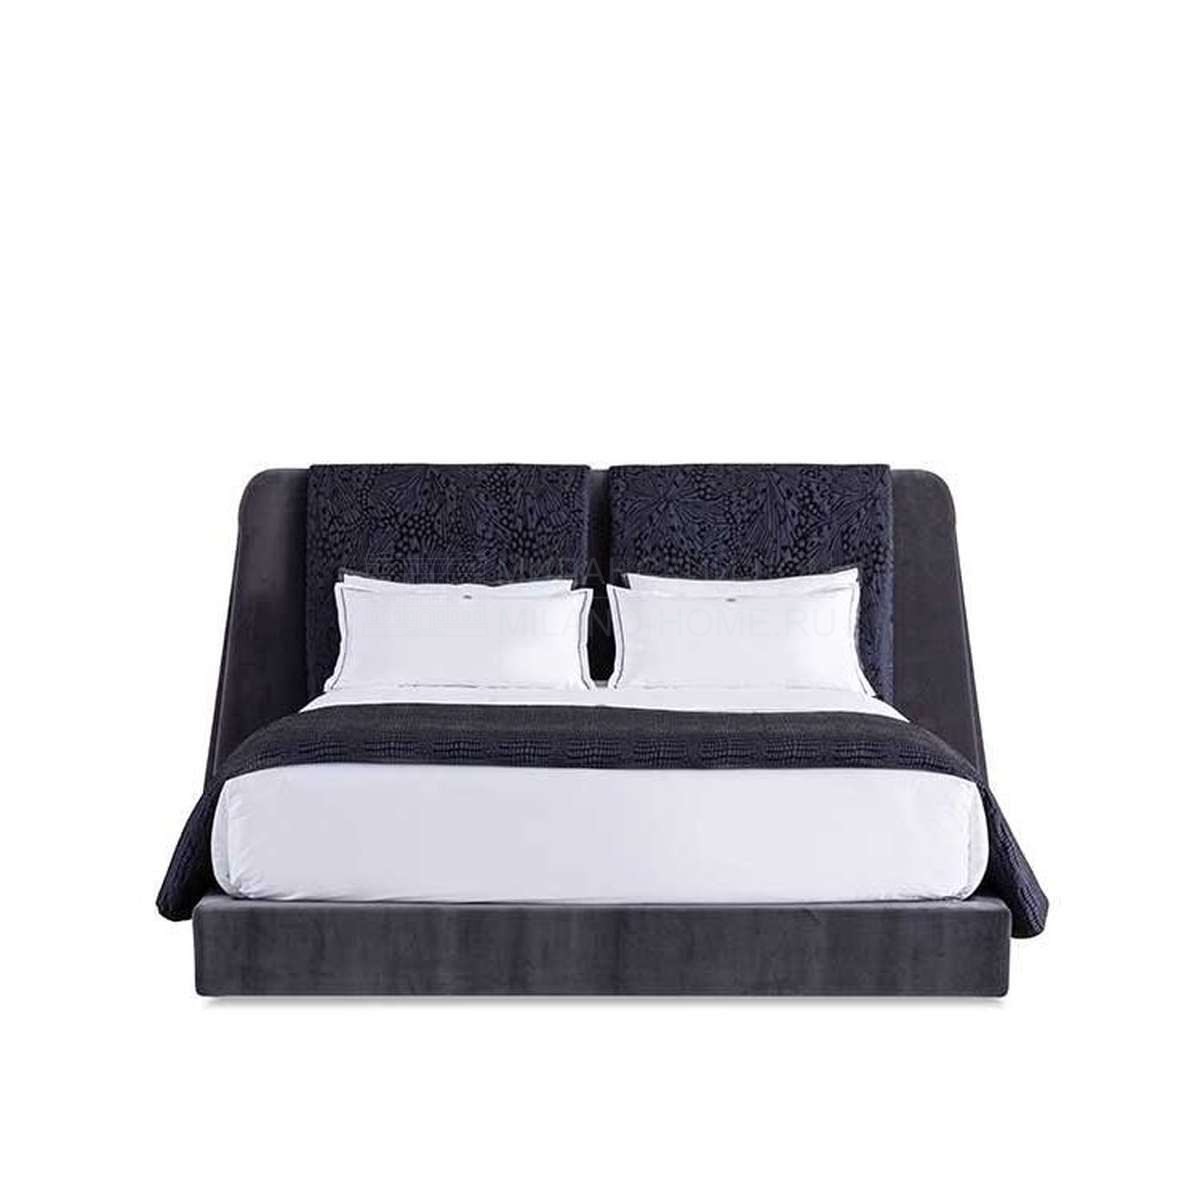 Двуспальная кровать Dreamy bed из Италии фабрики FENDI Casa